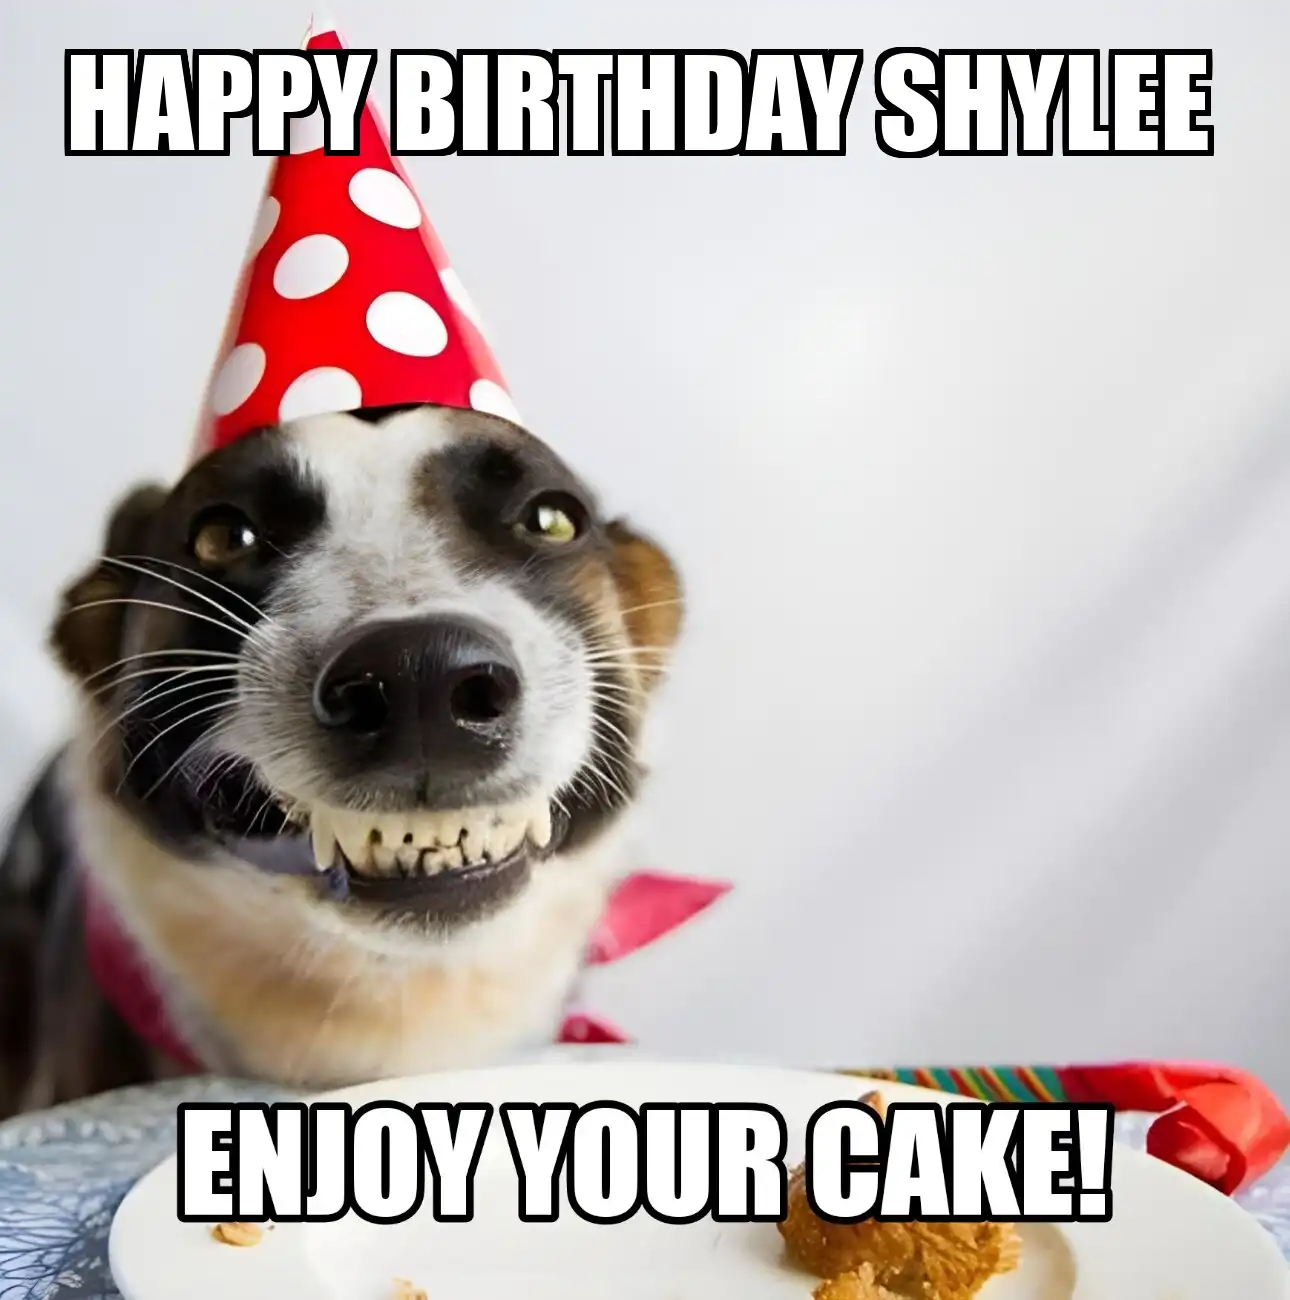 Happy Birthday Shylee Enjoy Your Cake Dog Meme